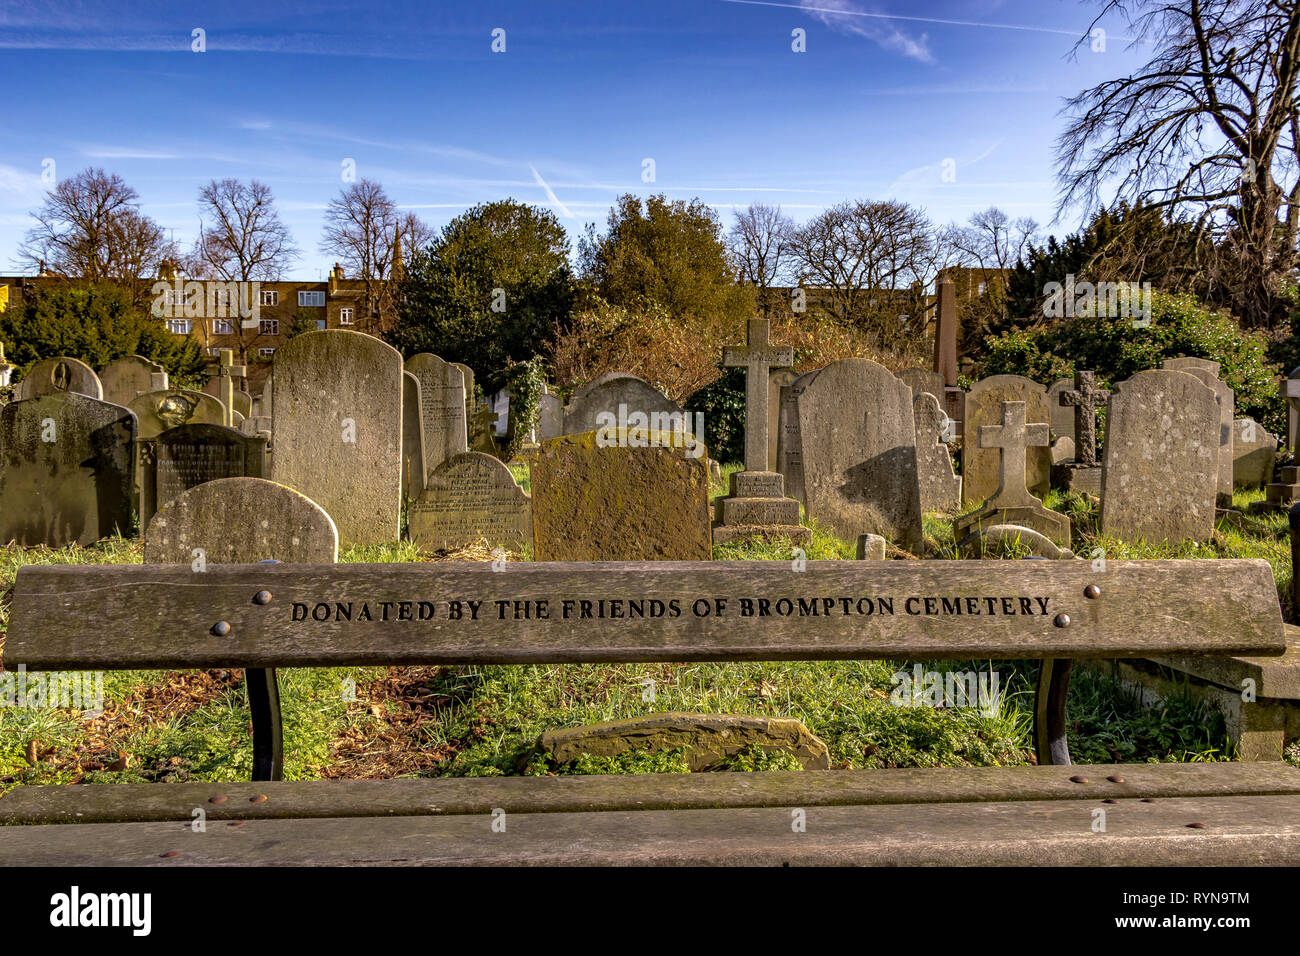 Brompton Cemetery, una panca di legno donata dagli amici del cimitero di Brompton si trova nel Royal Borough di Kensington e Chelsea, Londra, Regno Unito Foto Stock